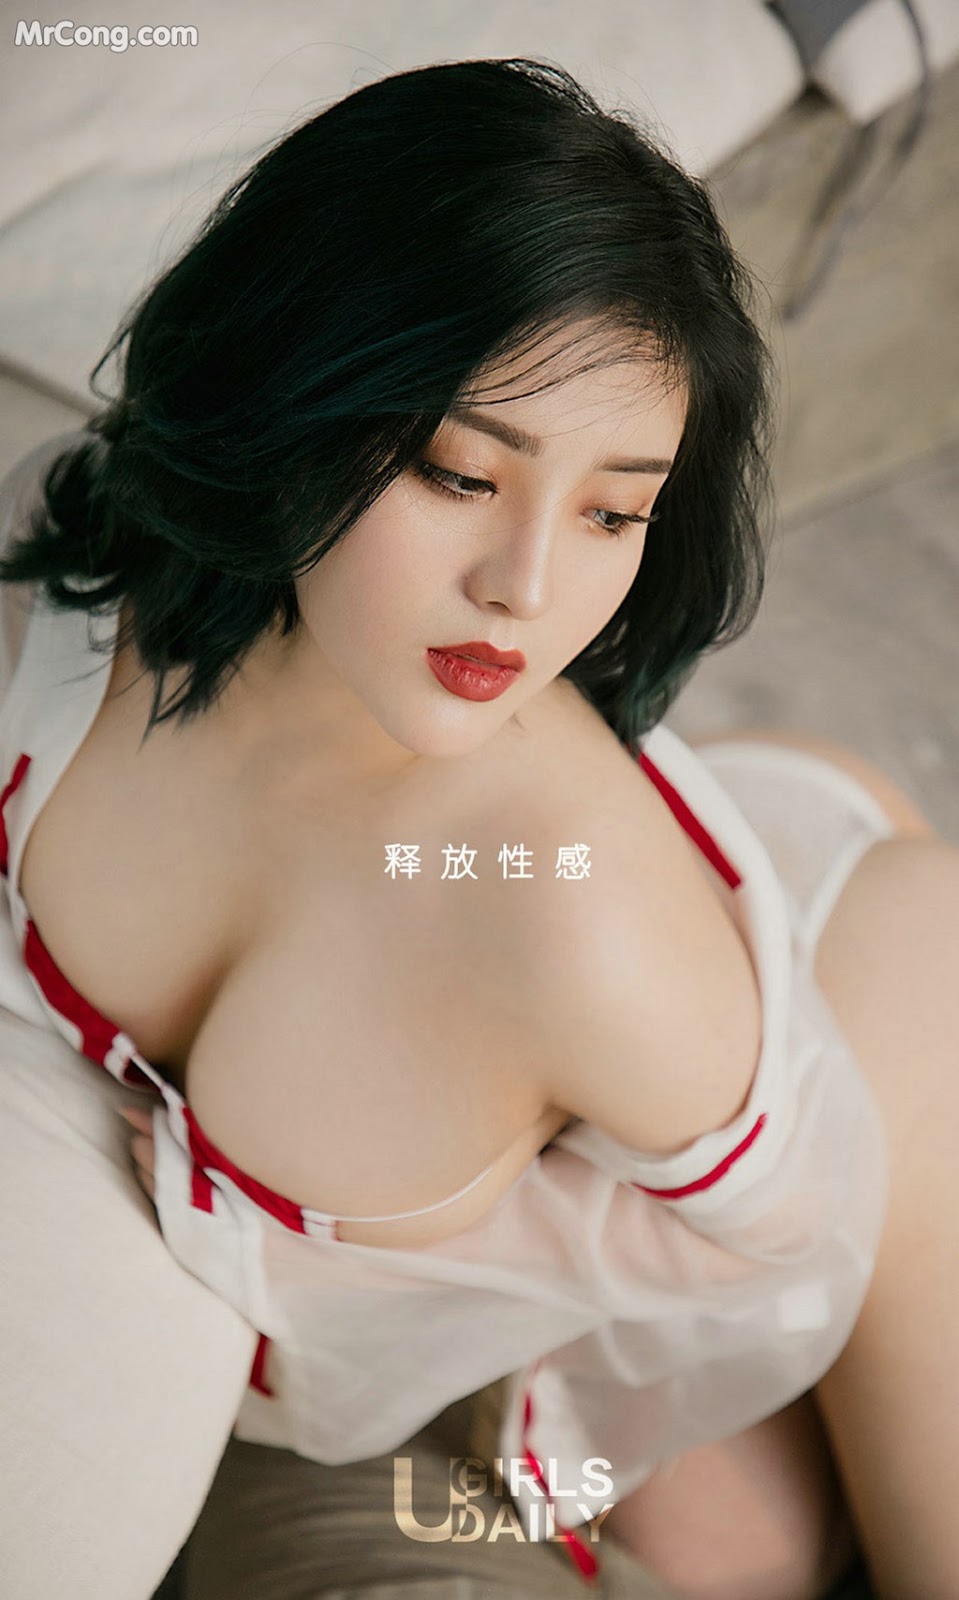 UGIRLS - Ai You Wu App No.1395: Model 井 酱 baby (35 photos)